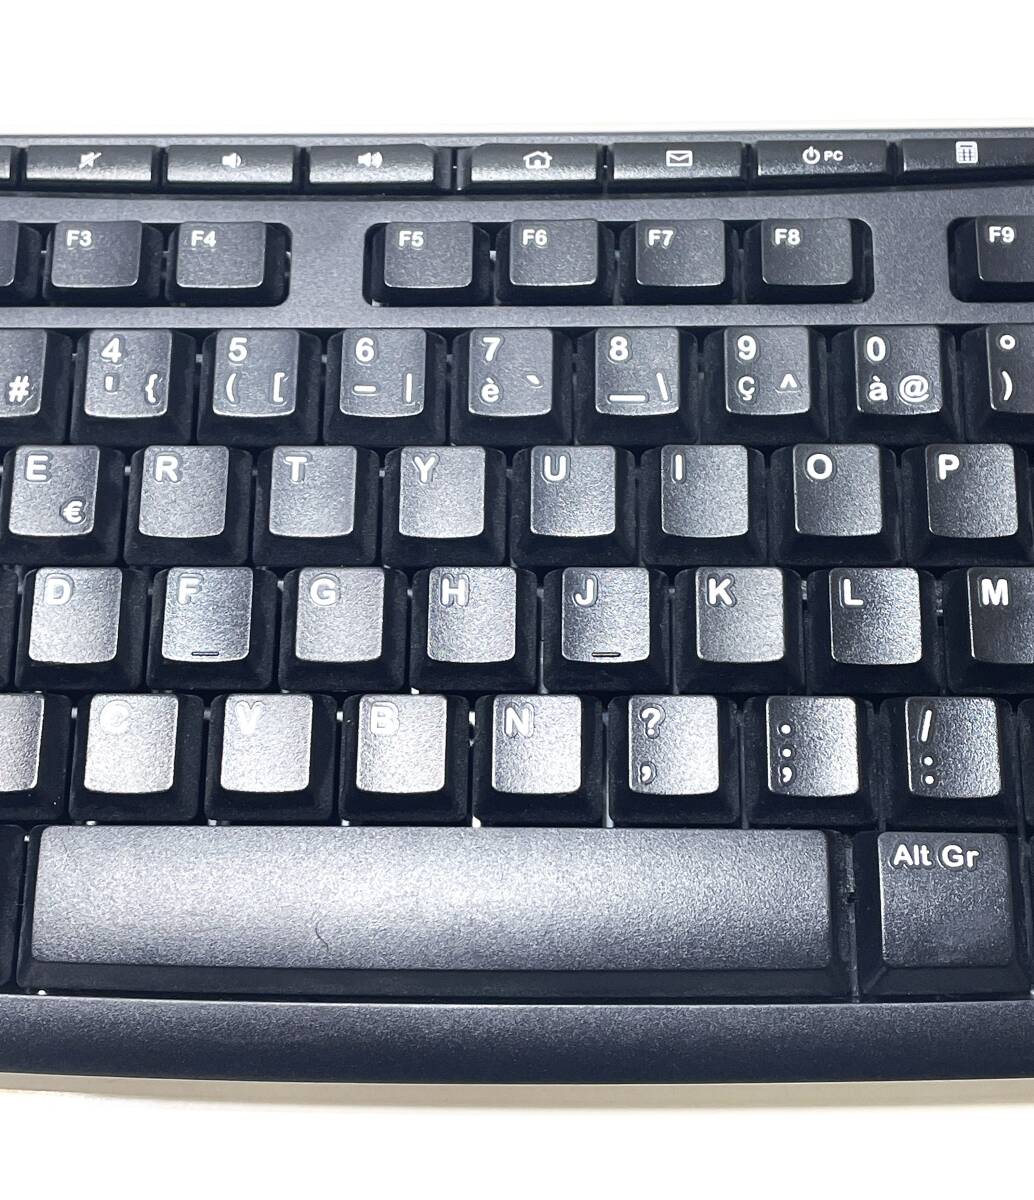  即決 珍しい フランス語キーボード Logitech K270 ワイヤレスキーボード 動作確認済 French keyboard ロジテック_画像6